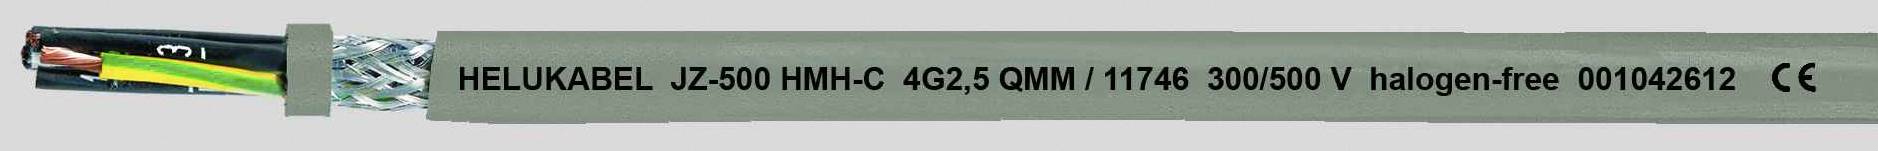 HELUKABEL JZ-500 HMH-C Steuerleitung 7 G 0.75 mm² Grau 11682-1000 1000 m